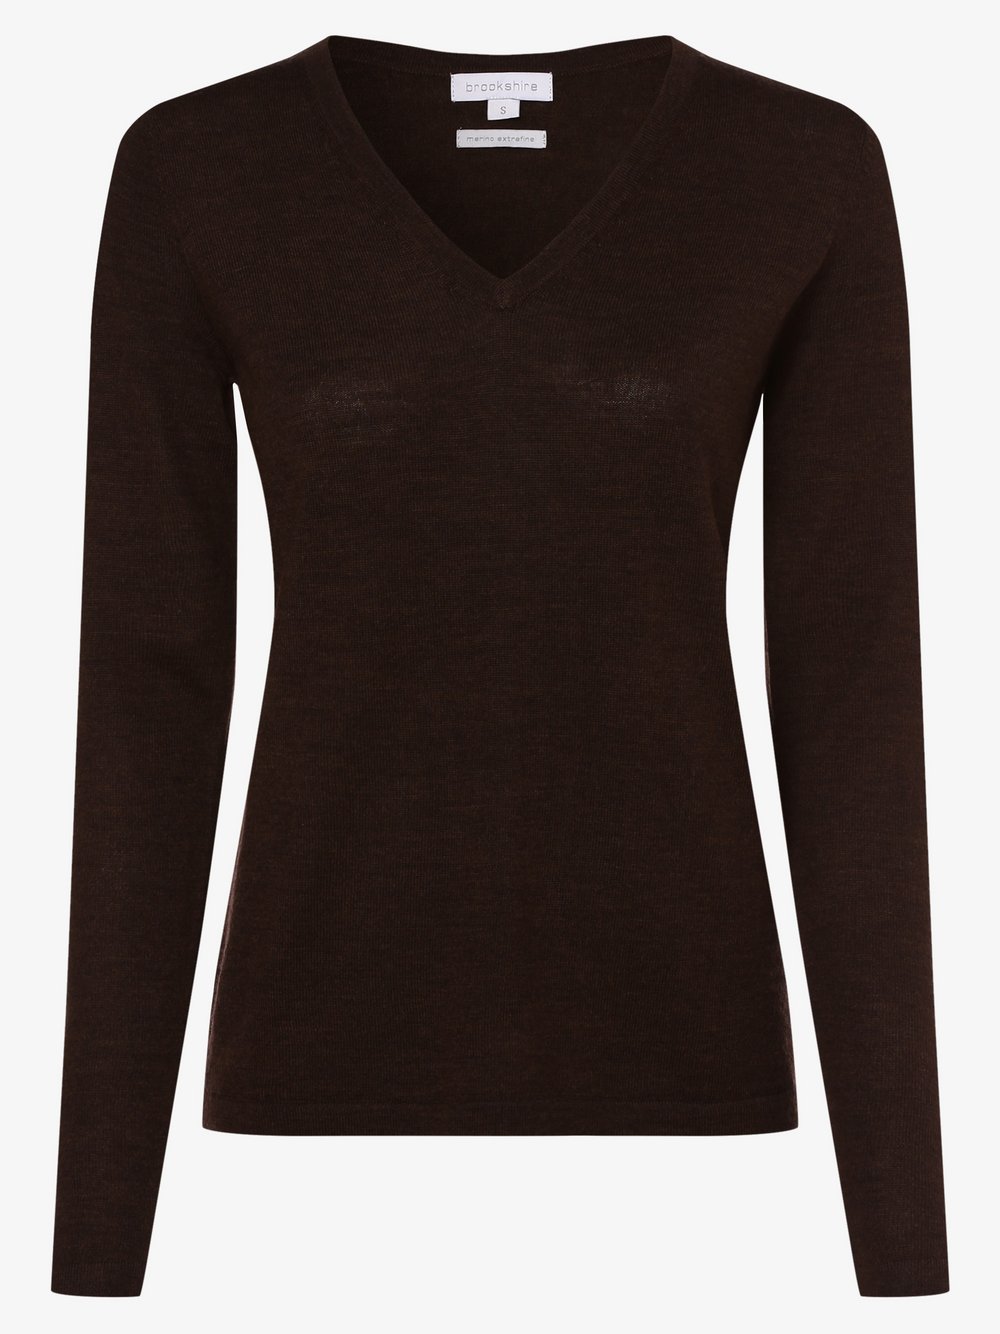 Brookshire - Damski sweter z wełny merino, brązowy